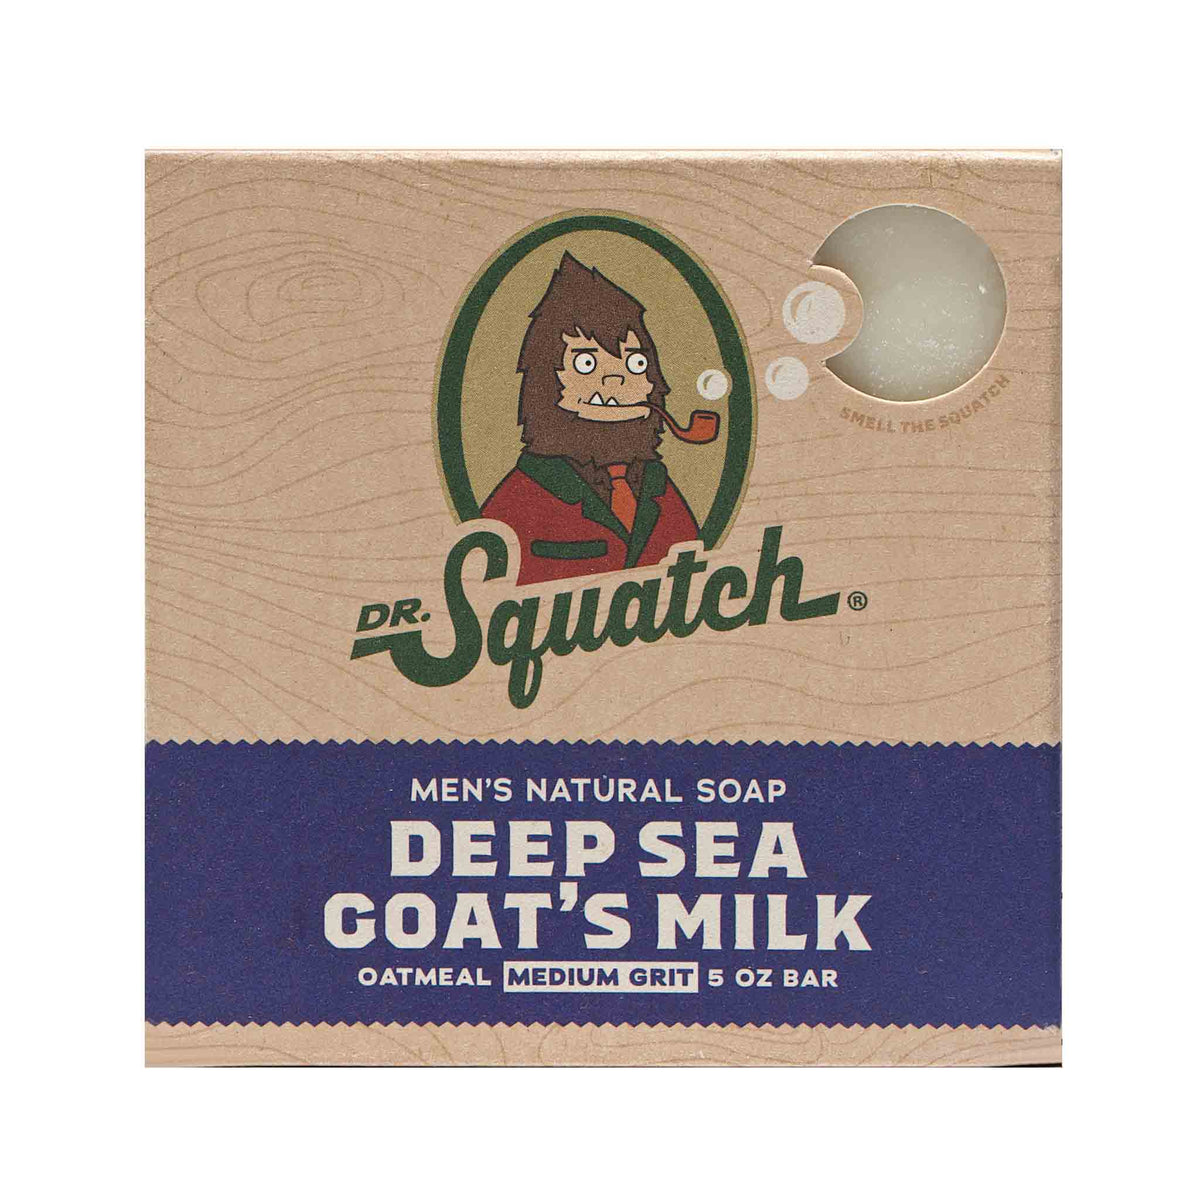 Dr. Squatch Men's Natural Soap Deep Sea Goat's Milk 5oz Bar – Spa